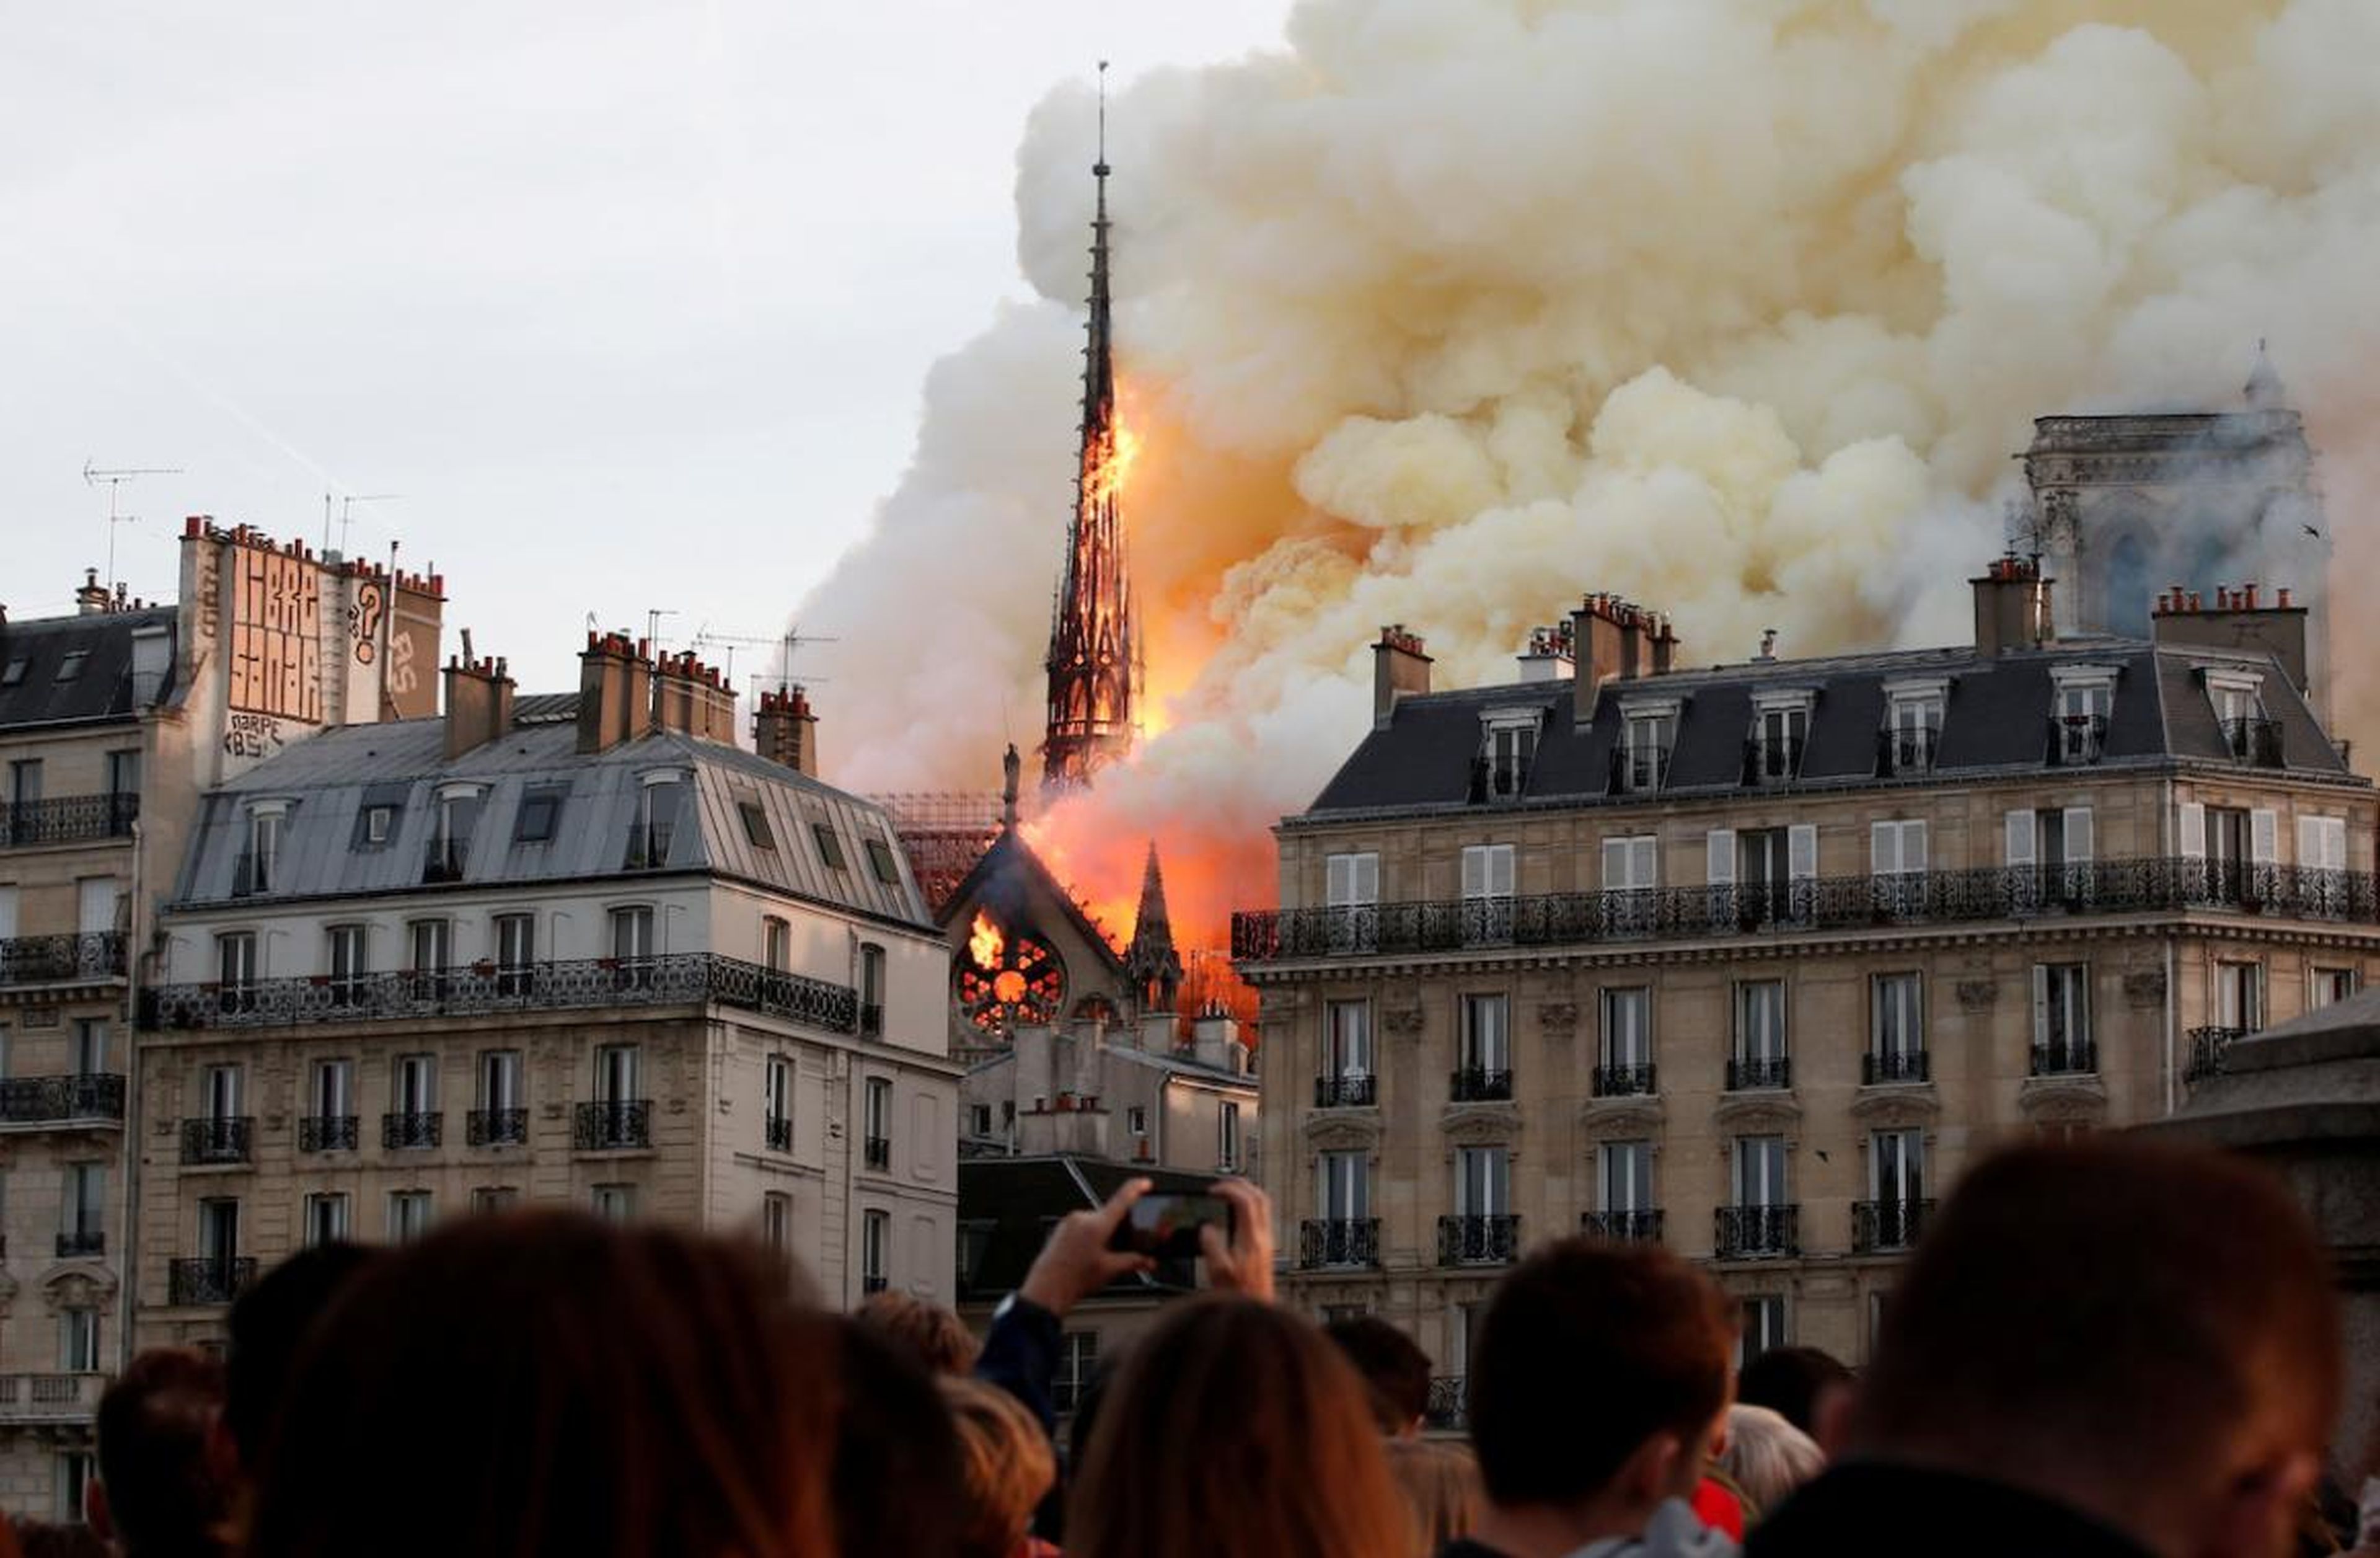 El fuego envuelve la aguja de la Catedral de Notre Dame en París, Francia, el 15 de abril. Durante la renovación y restauración, el techo se incendió, causando grandes daños.